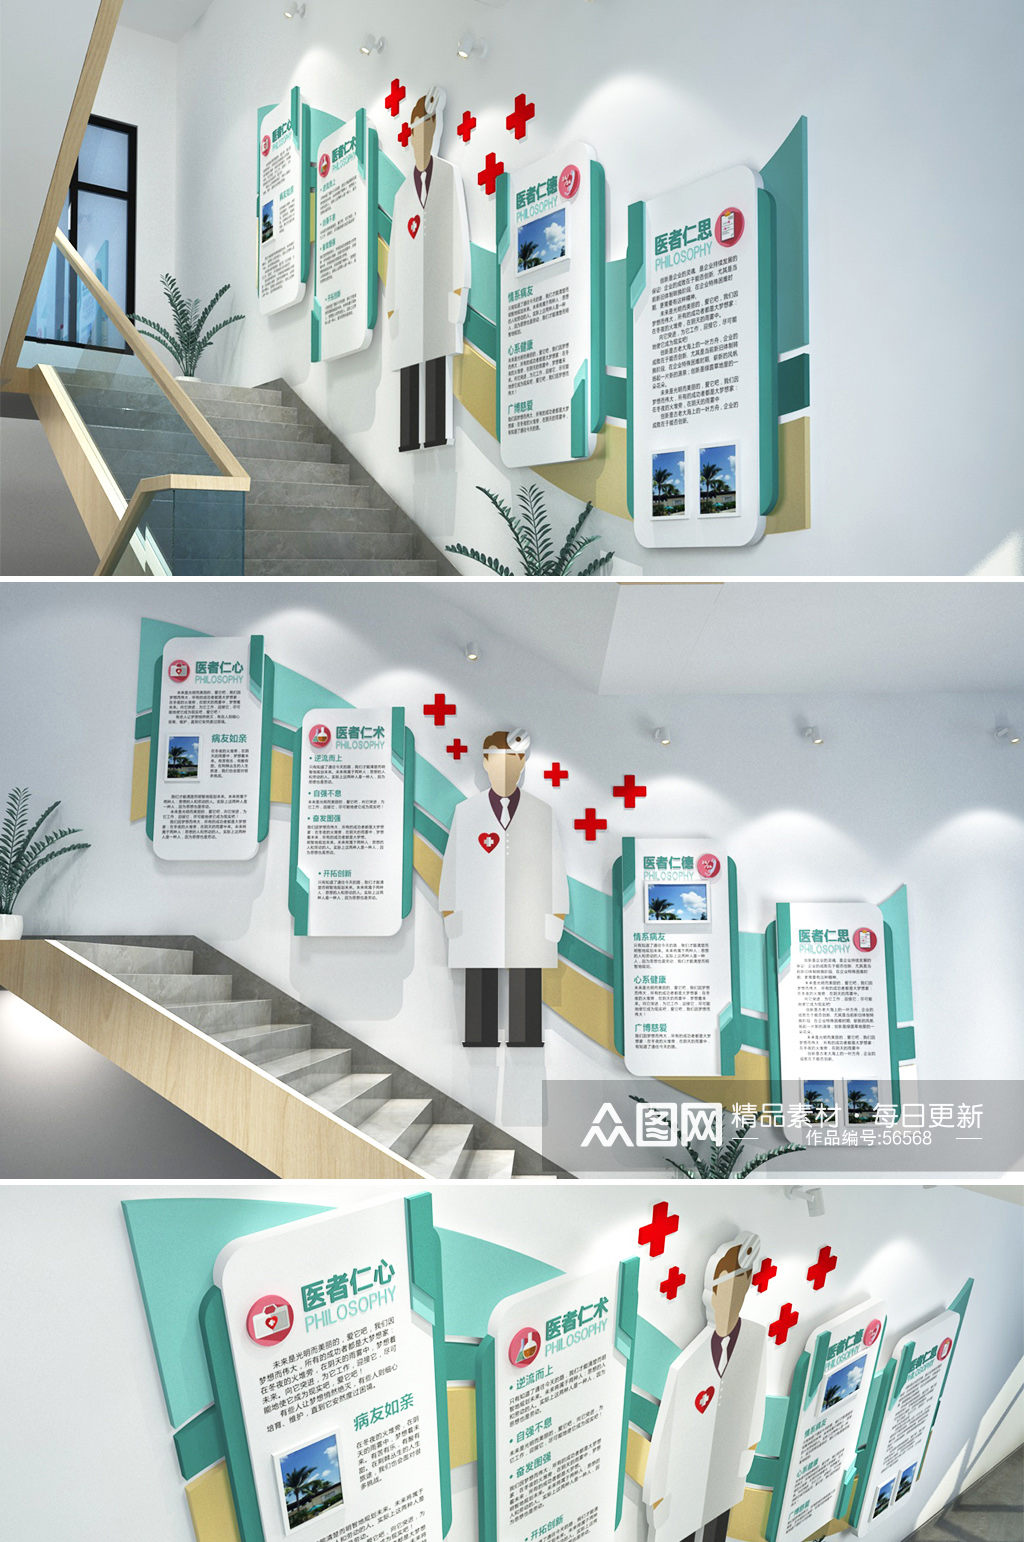 黄绿流线医院诊所 楼梯公共卫生服务宣传文化墙设计模板素材素材